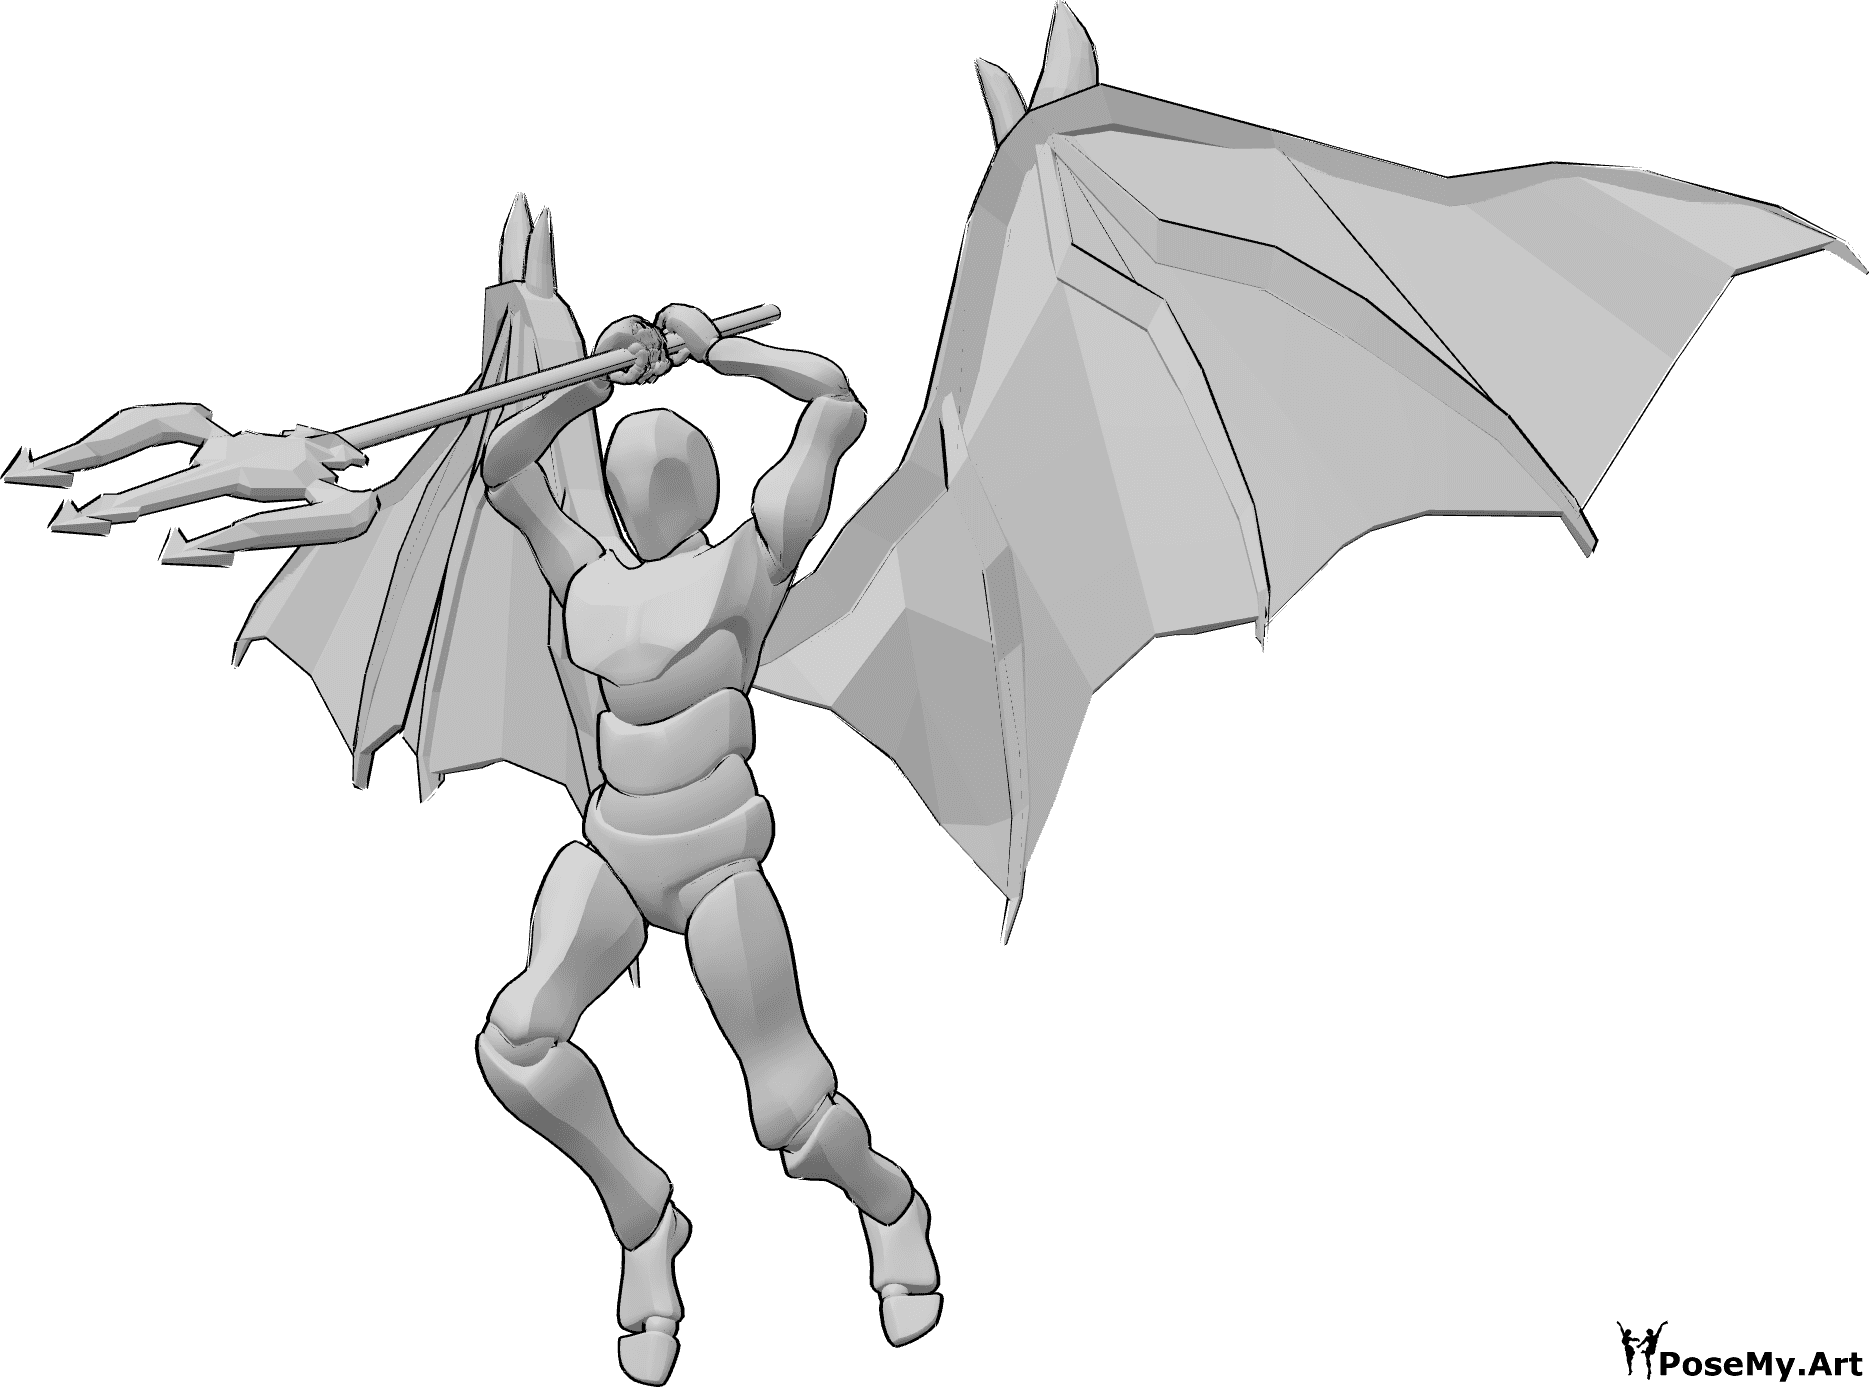 Posen-Referenz- Dynamische Dämonenangriffspose - Männchen mit Teufelsflügeln springt hoch, um anzugreifen, und hält seinen Dreizack mit beiden Händen über dem Kopf